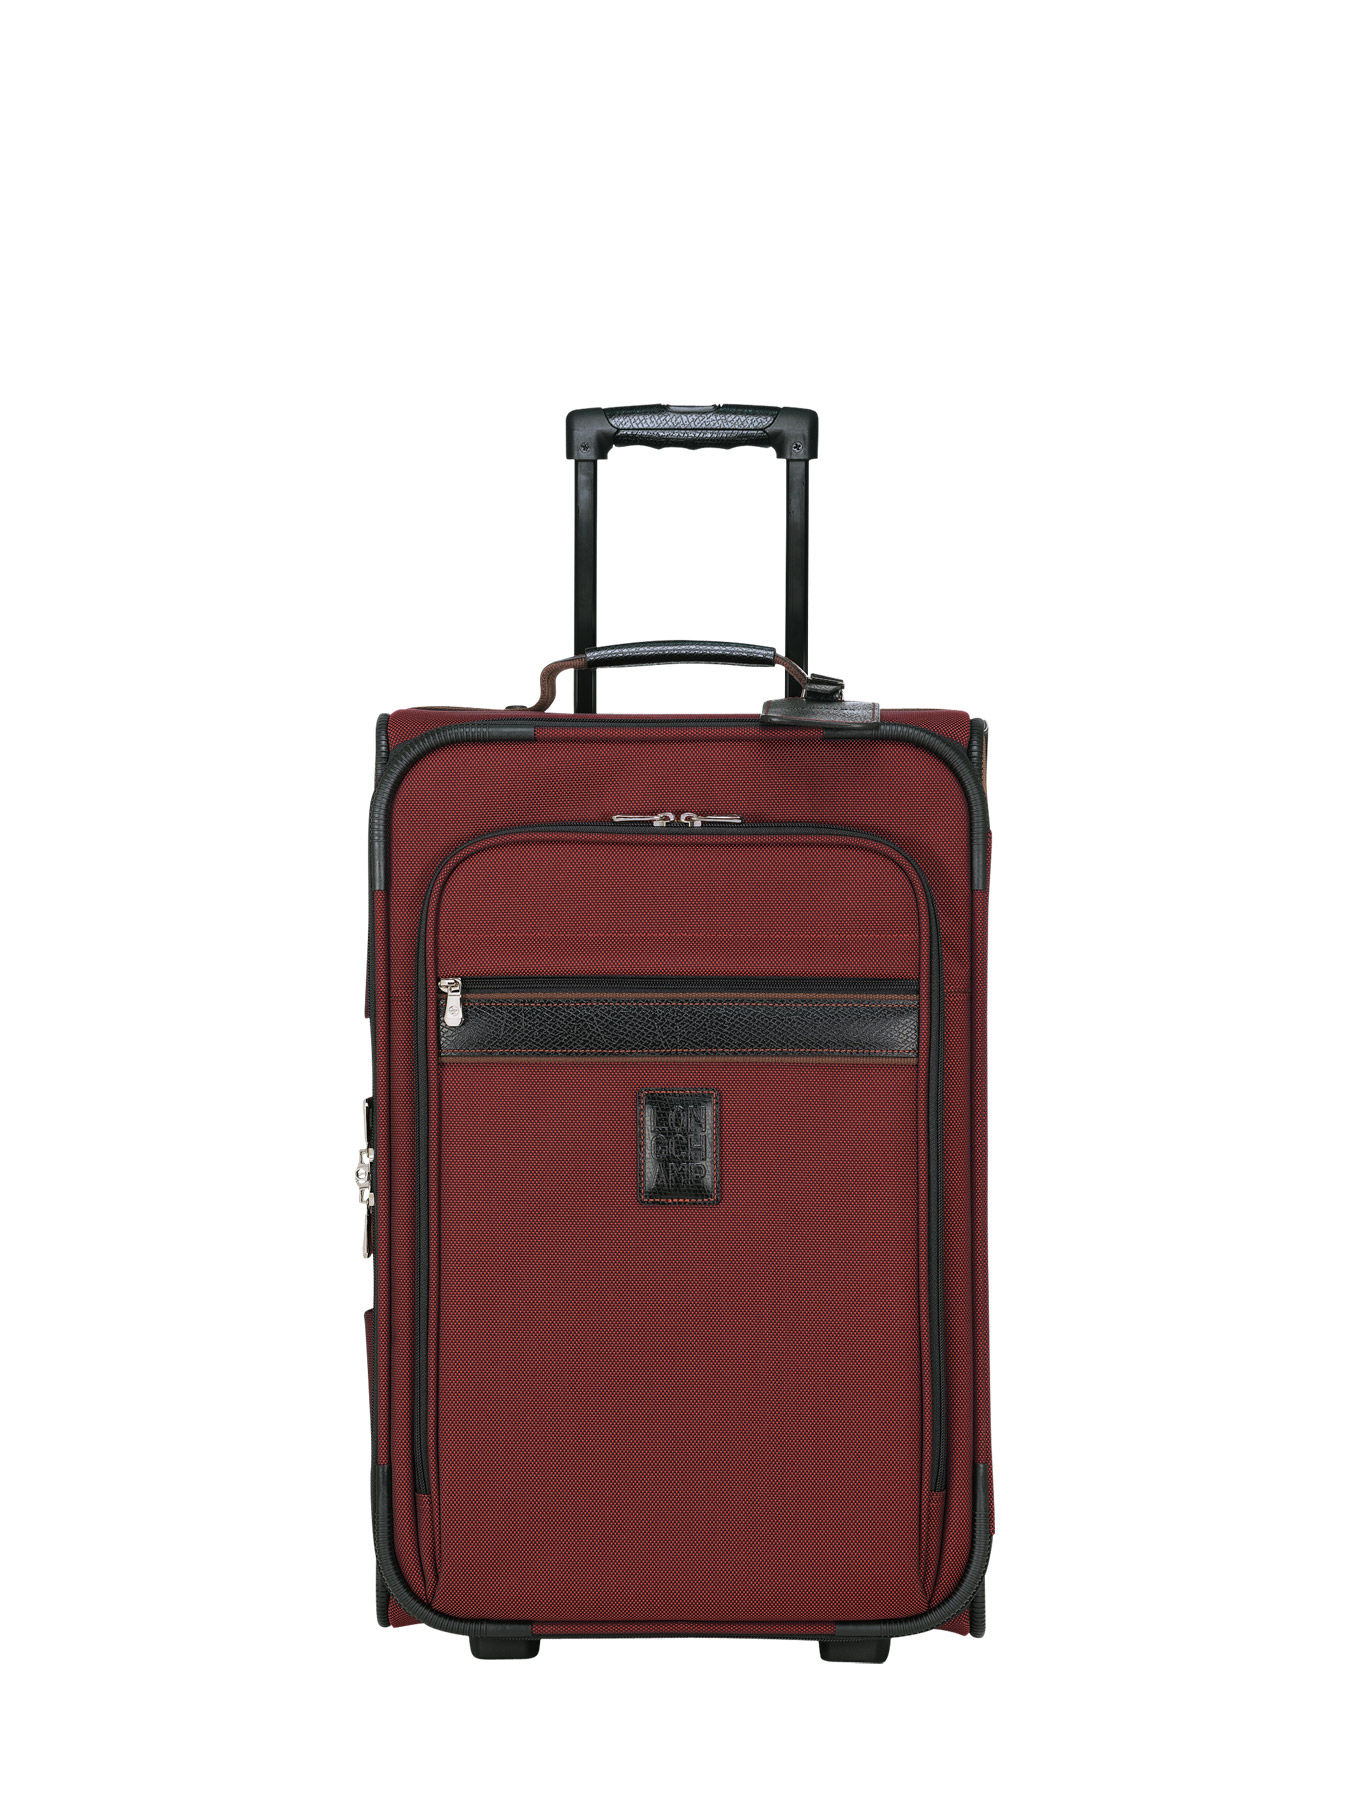 longchamp suitcase sale